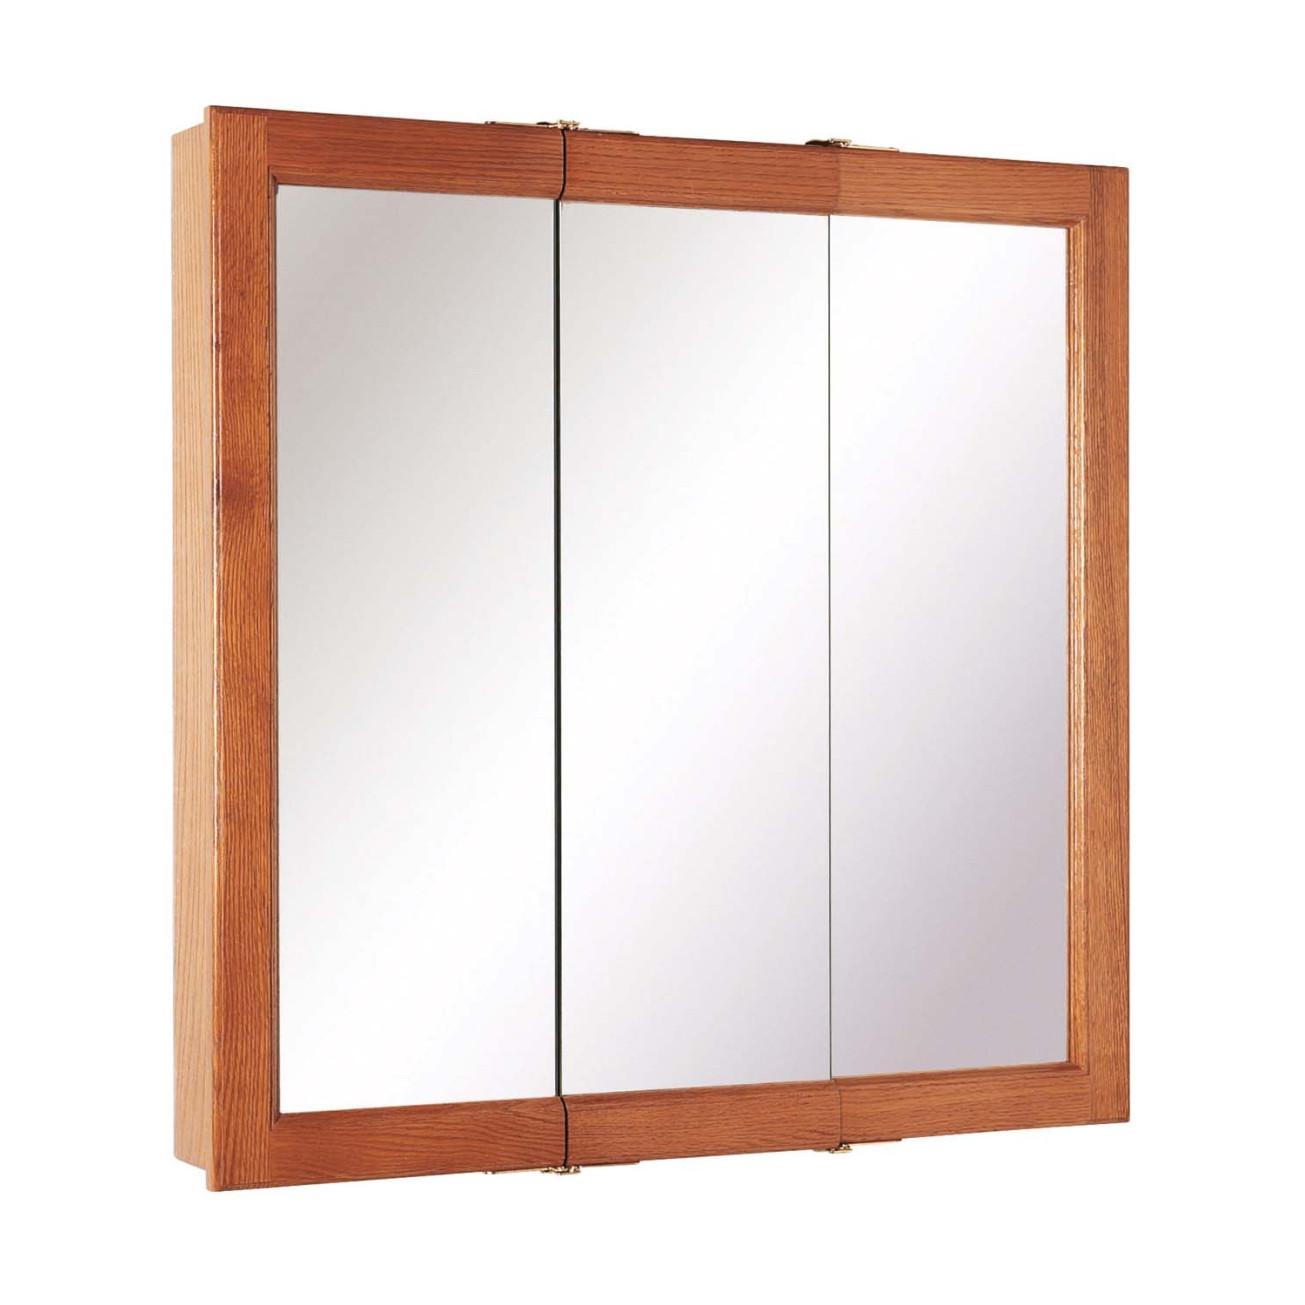 Best Of Three Door Mirrored Bathroom Cabinet